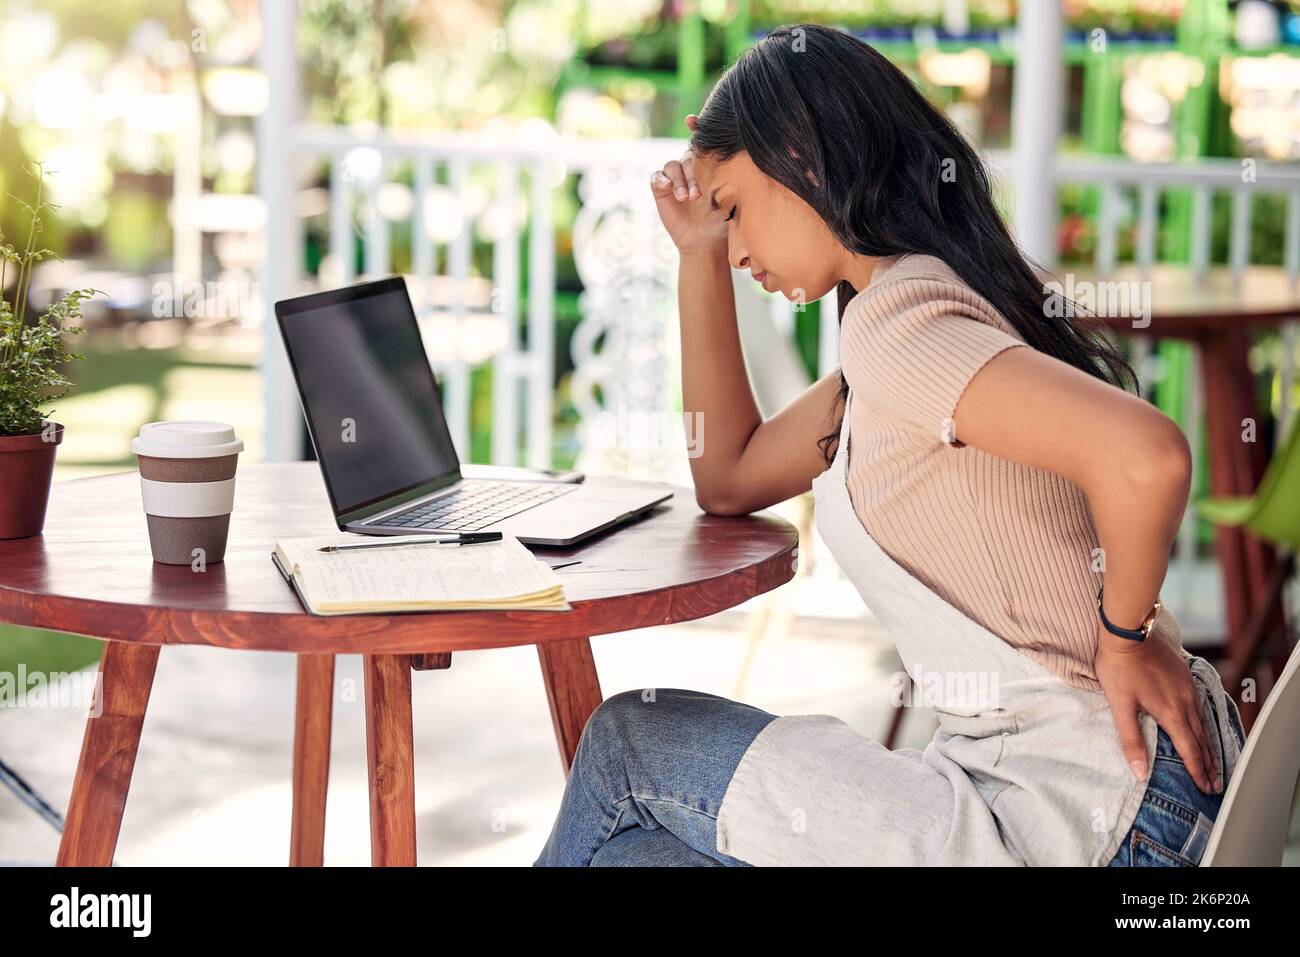 Druck, wie unversöhnlich. Ein junger Florist, der frustriert aussieht, während er Rückenschmerzen leidet und draußen an einem Laptop arbeitet. Stockfoto